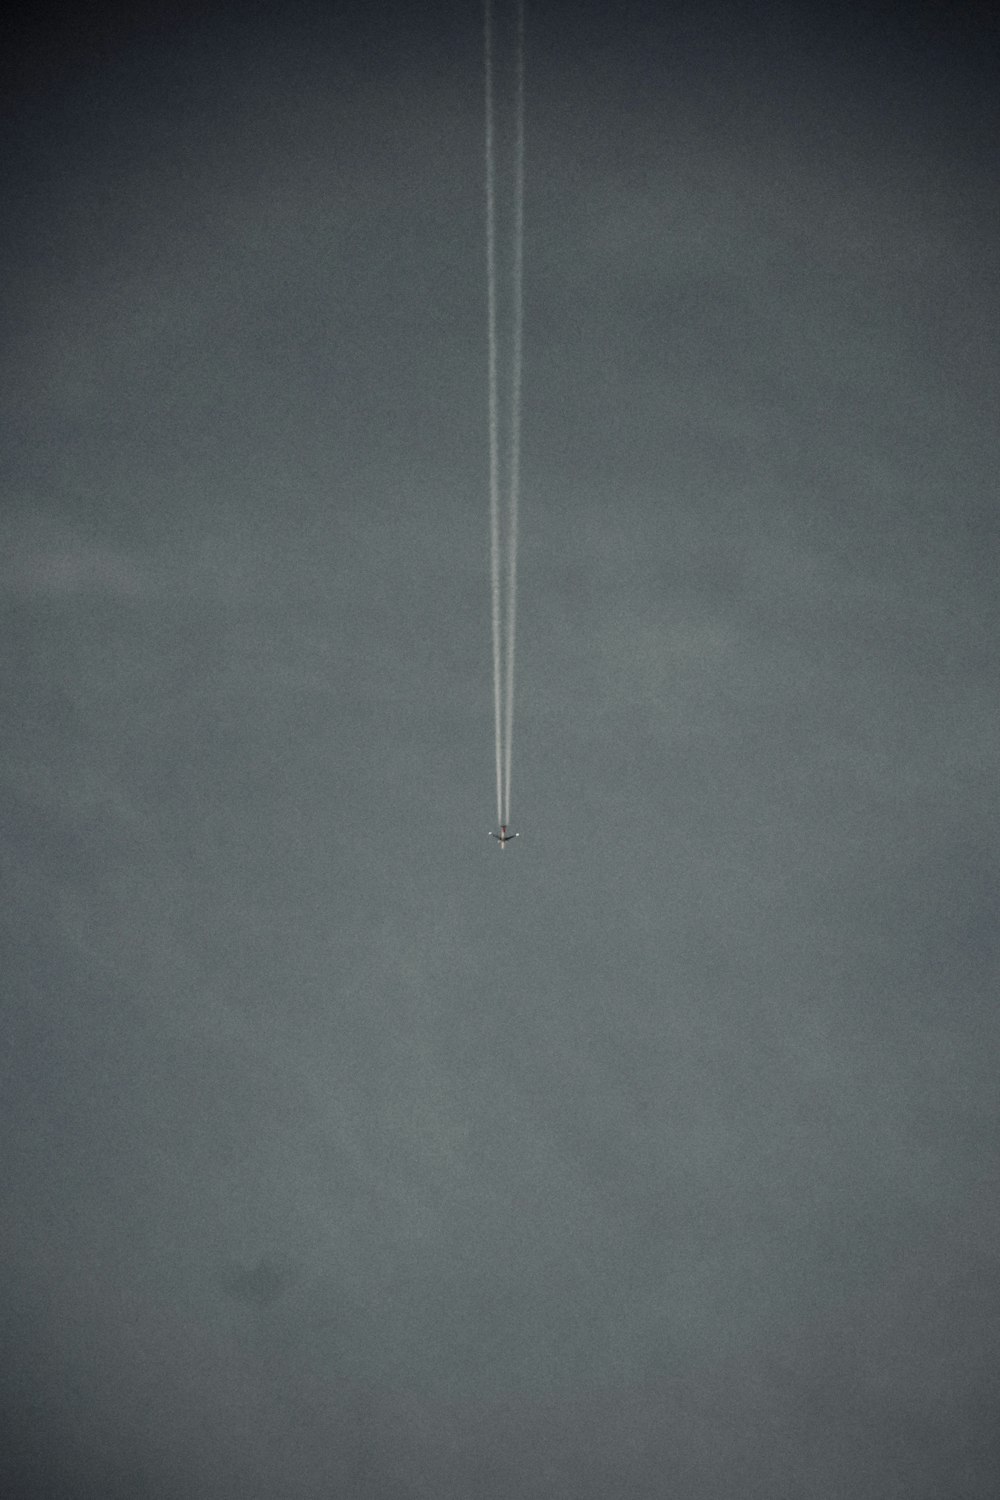 Un avion vole dans le ciel avec une traînée de condensation